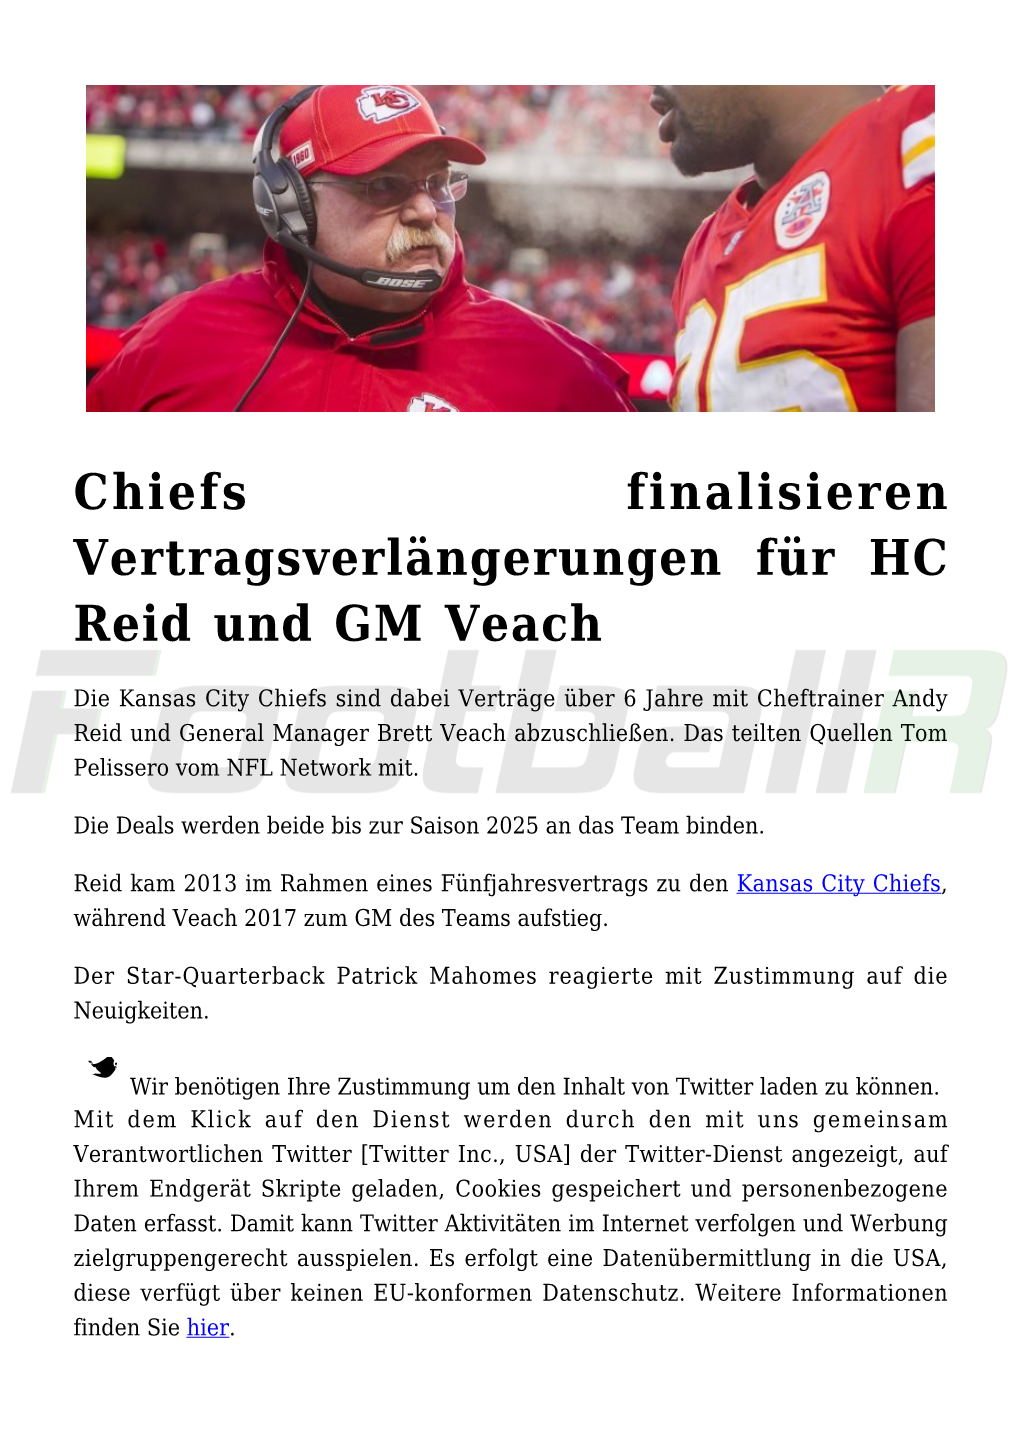 Chiefs Finalisieren Vertragsverlängerungen Für HC Reid Und GM Veach